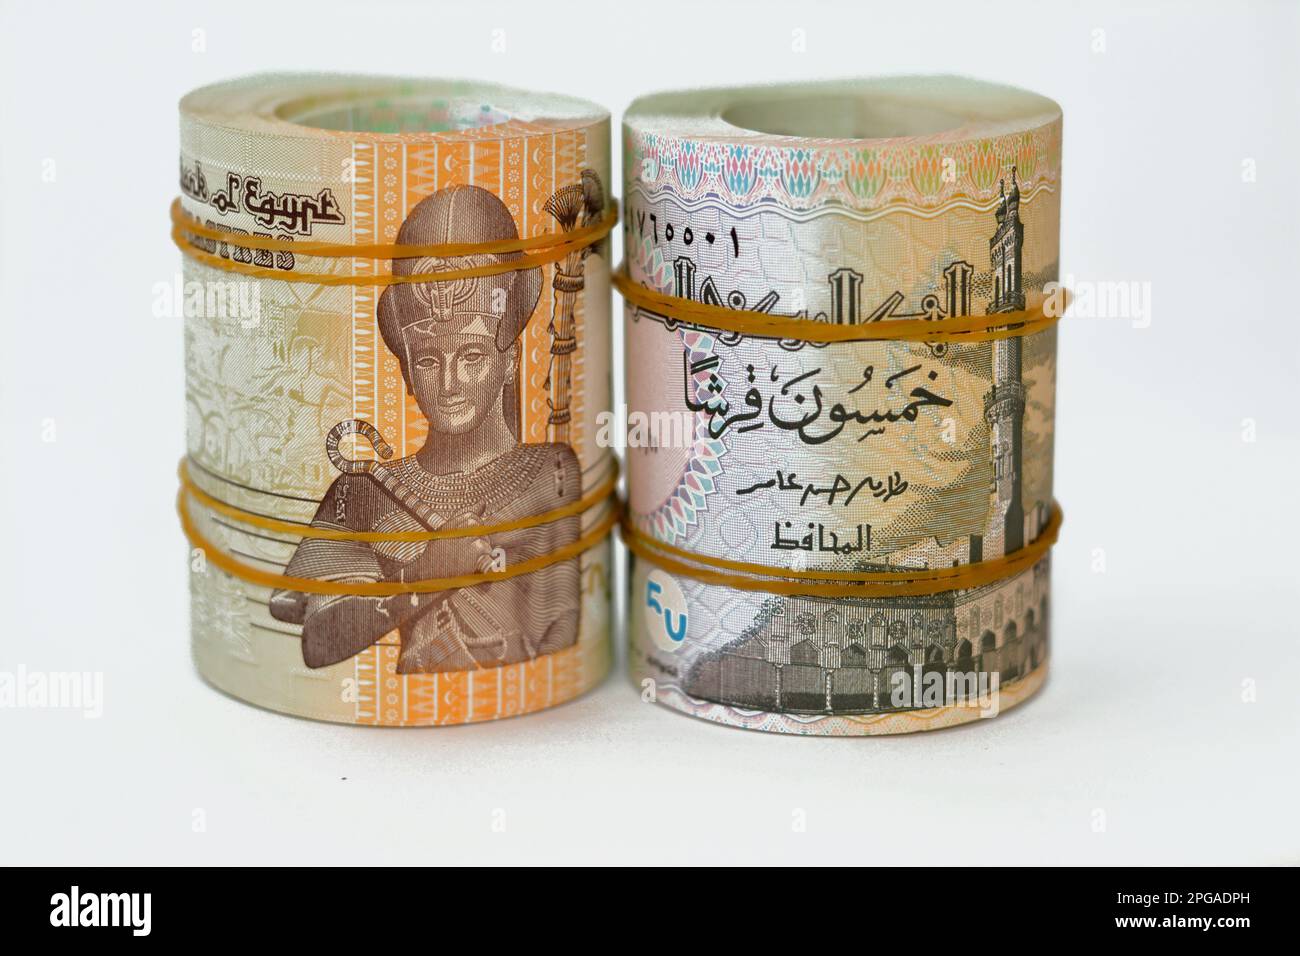 50 piasters metà EGP LE egiziane sterline banconote in denaro arrotolato con fasce di gomma con un'immagine della moschea di al Azhar e Ramesses II il secondo 2nd, ad esempio Foto Stock